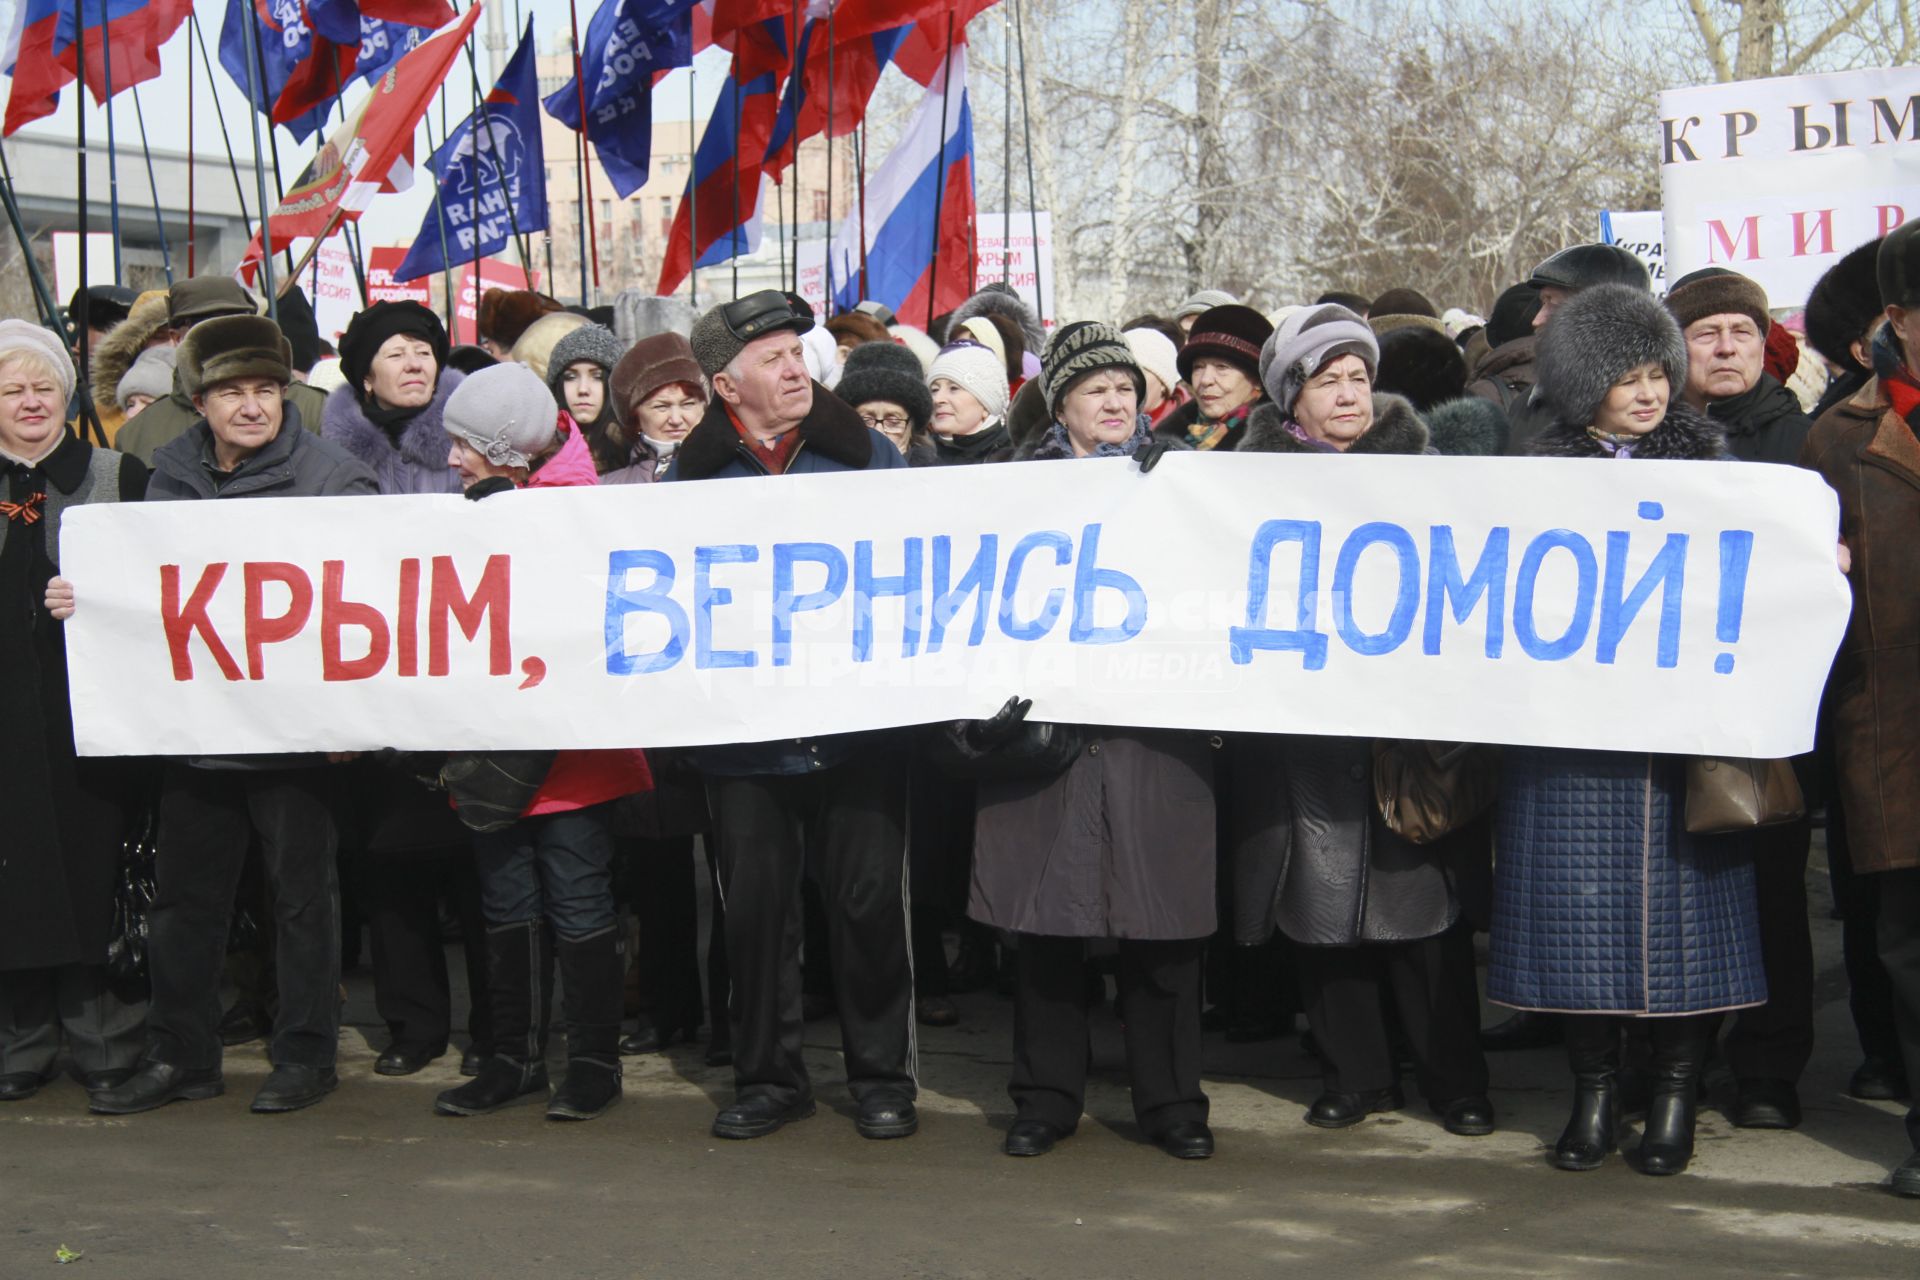 Митинг в поддержку поддержка Крыма в Барнауле. На снимке: митингующий с плакатом: `Крым, вернись домой!`.